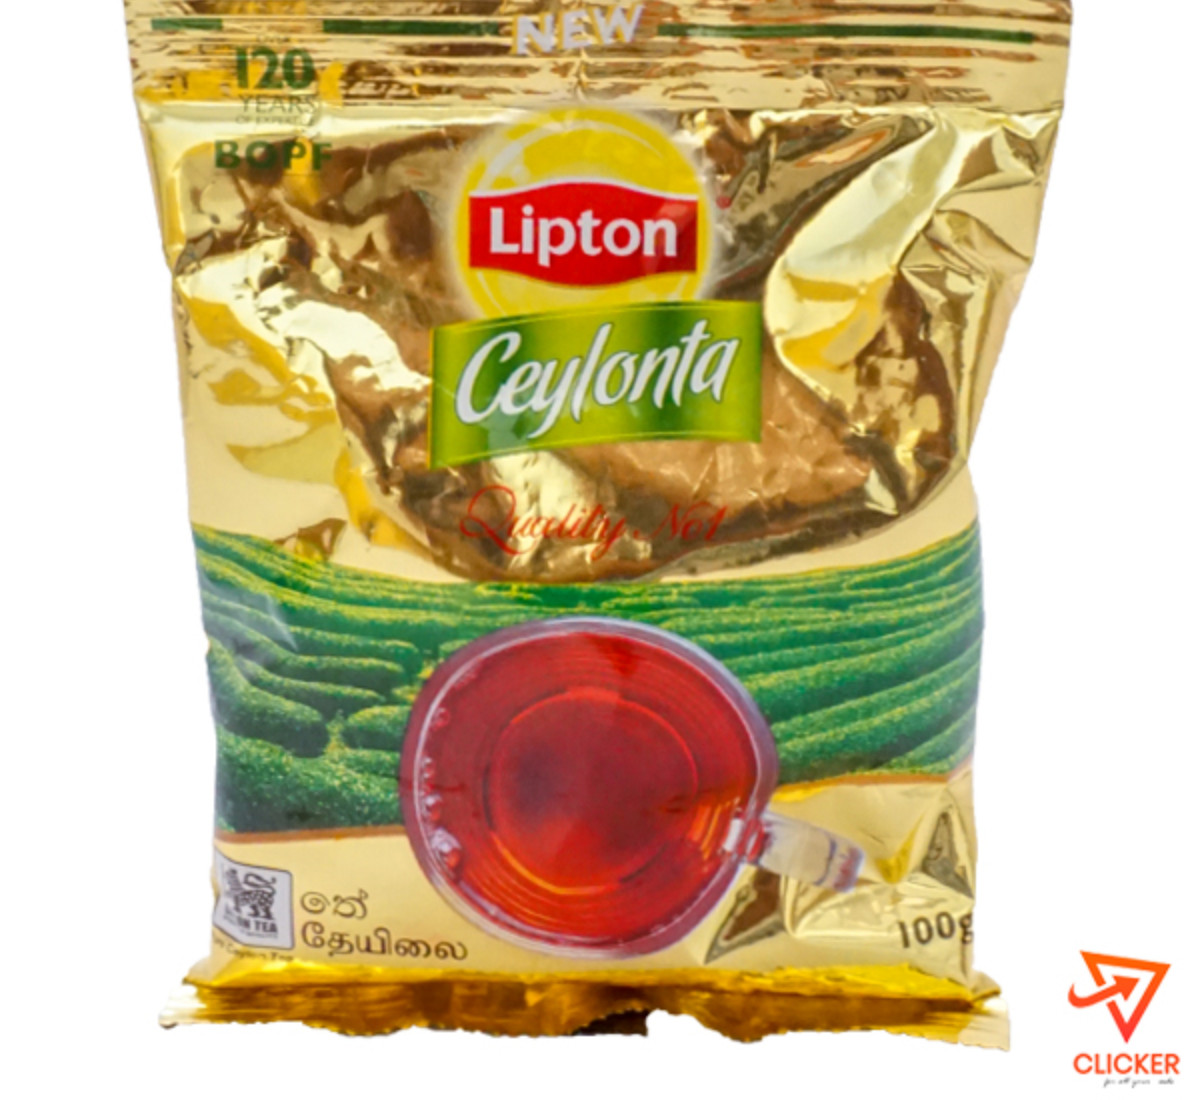 Clicker product 100g LIPTON Ceylonta Tea 950